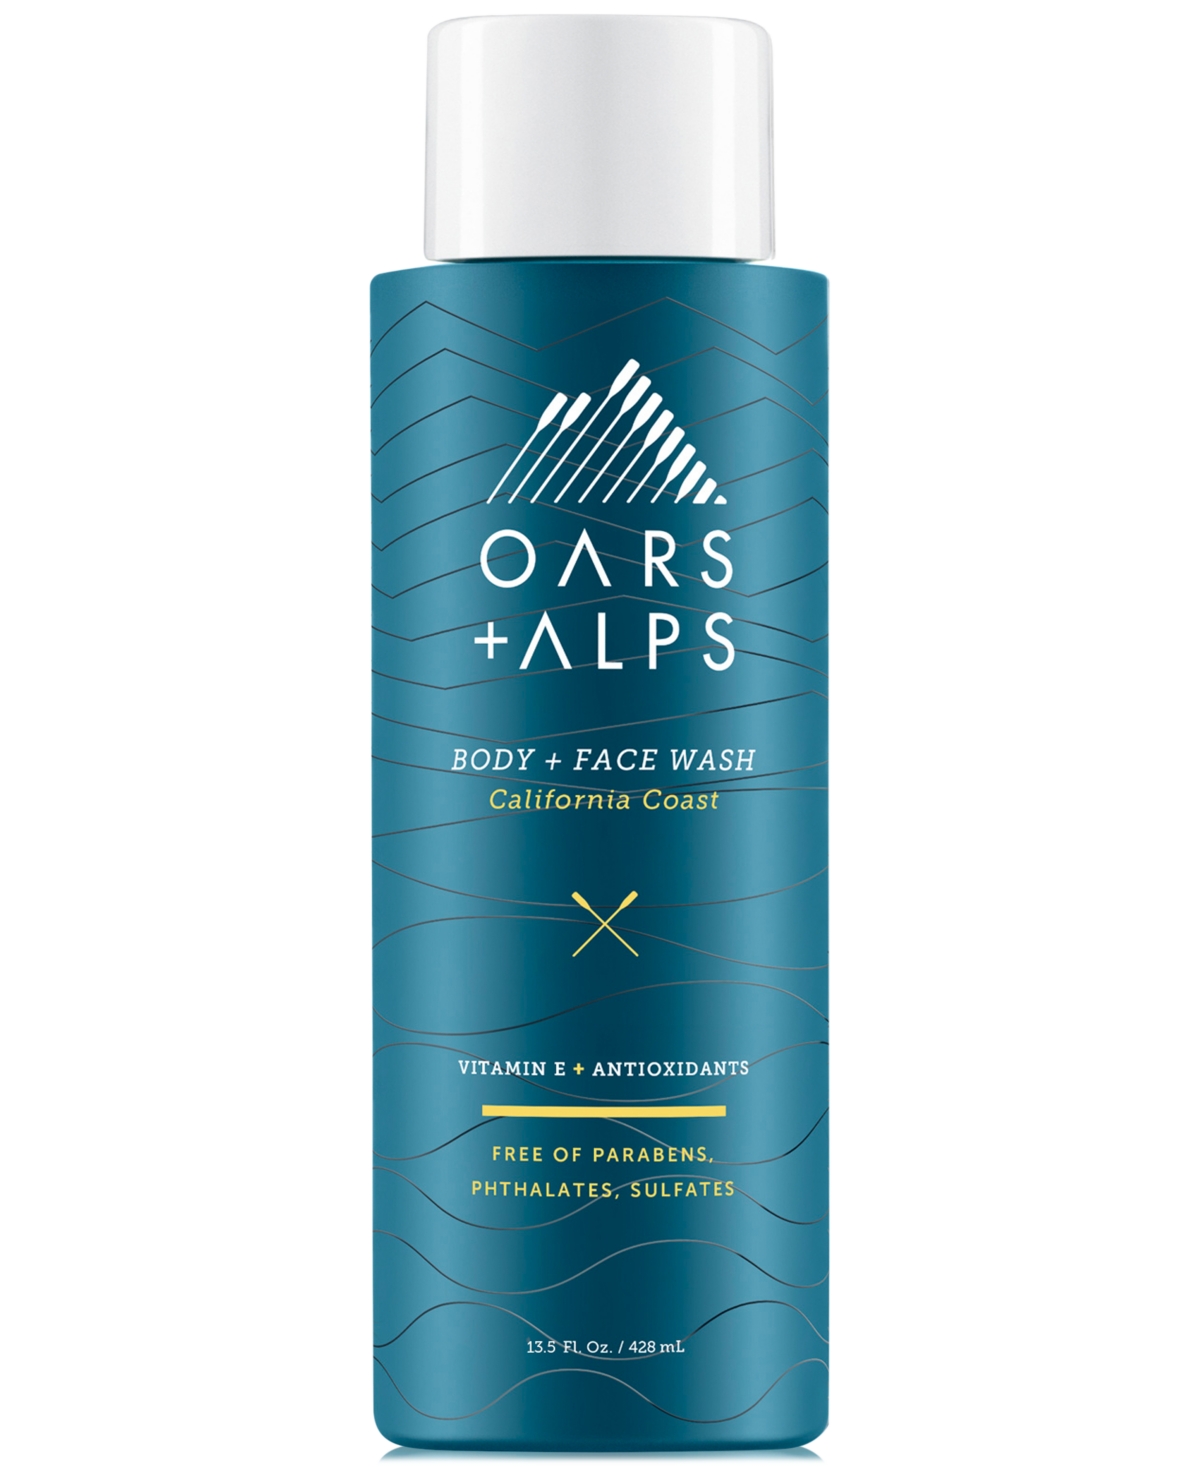 Oars + Alps California Coast Body + Face Wash, 13.5 Oz. In White